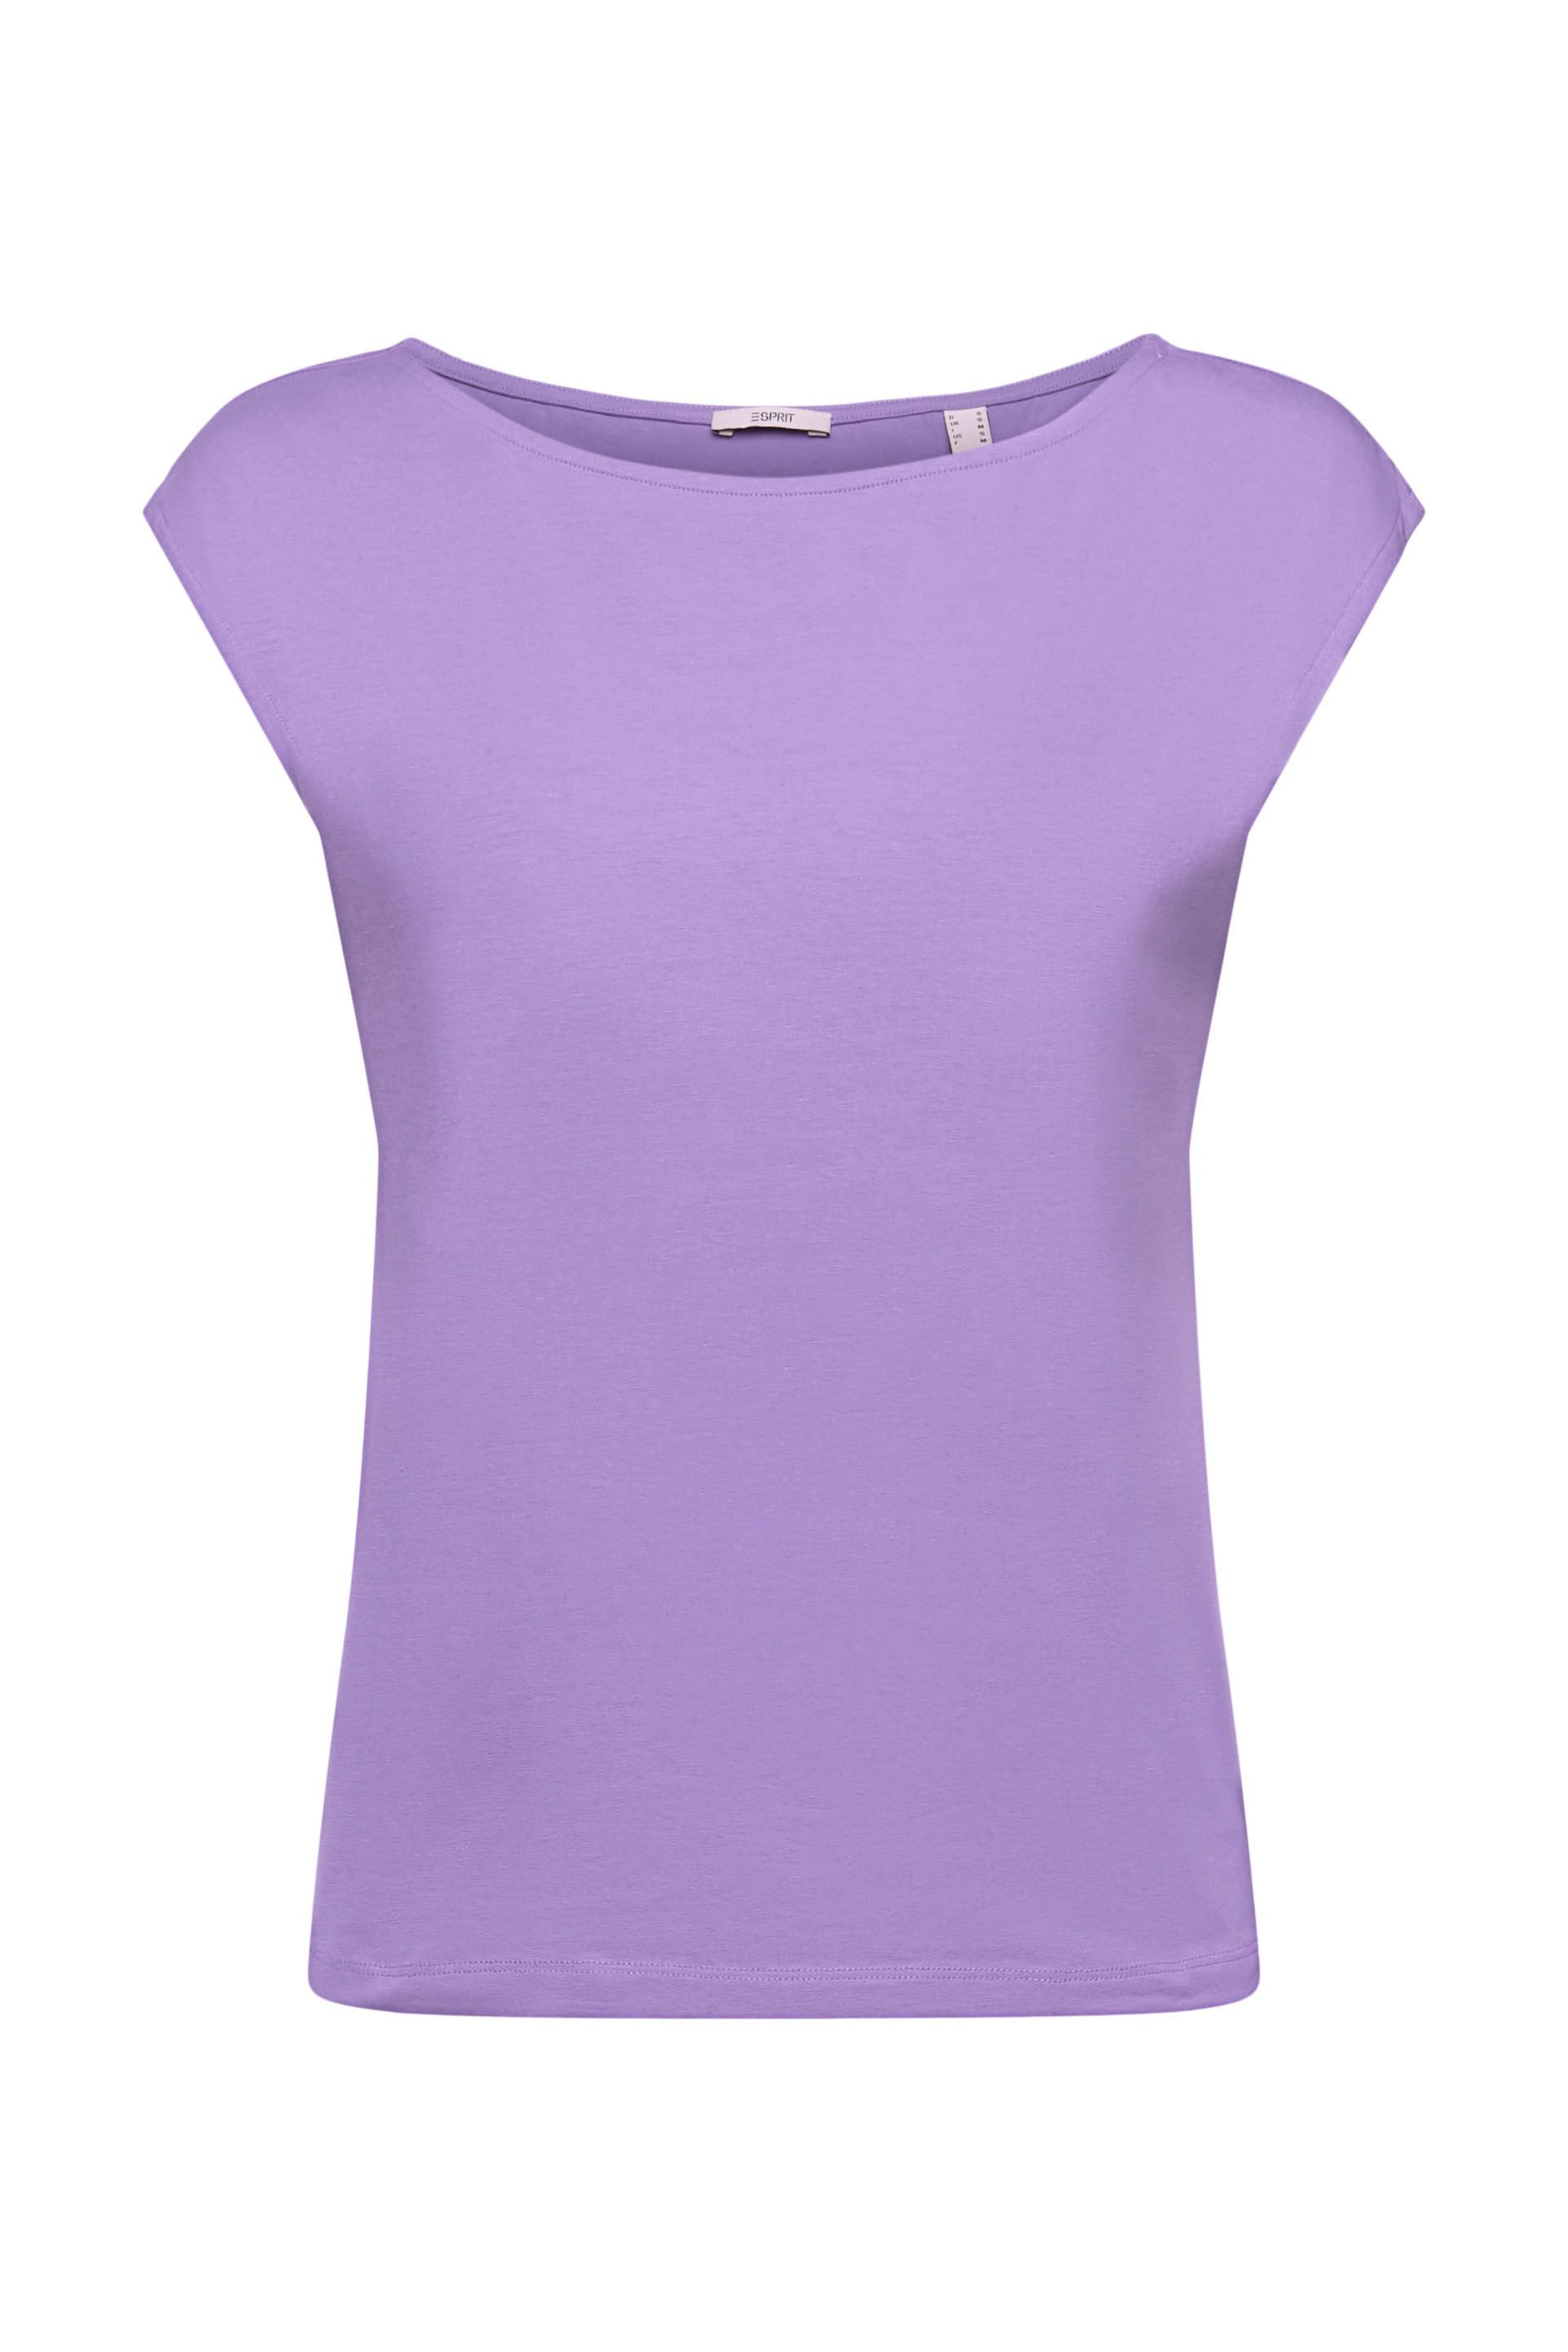 Esprit - Stretch cotton T-shirt, Purple Lilac, large image number 0